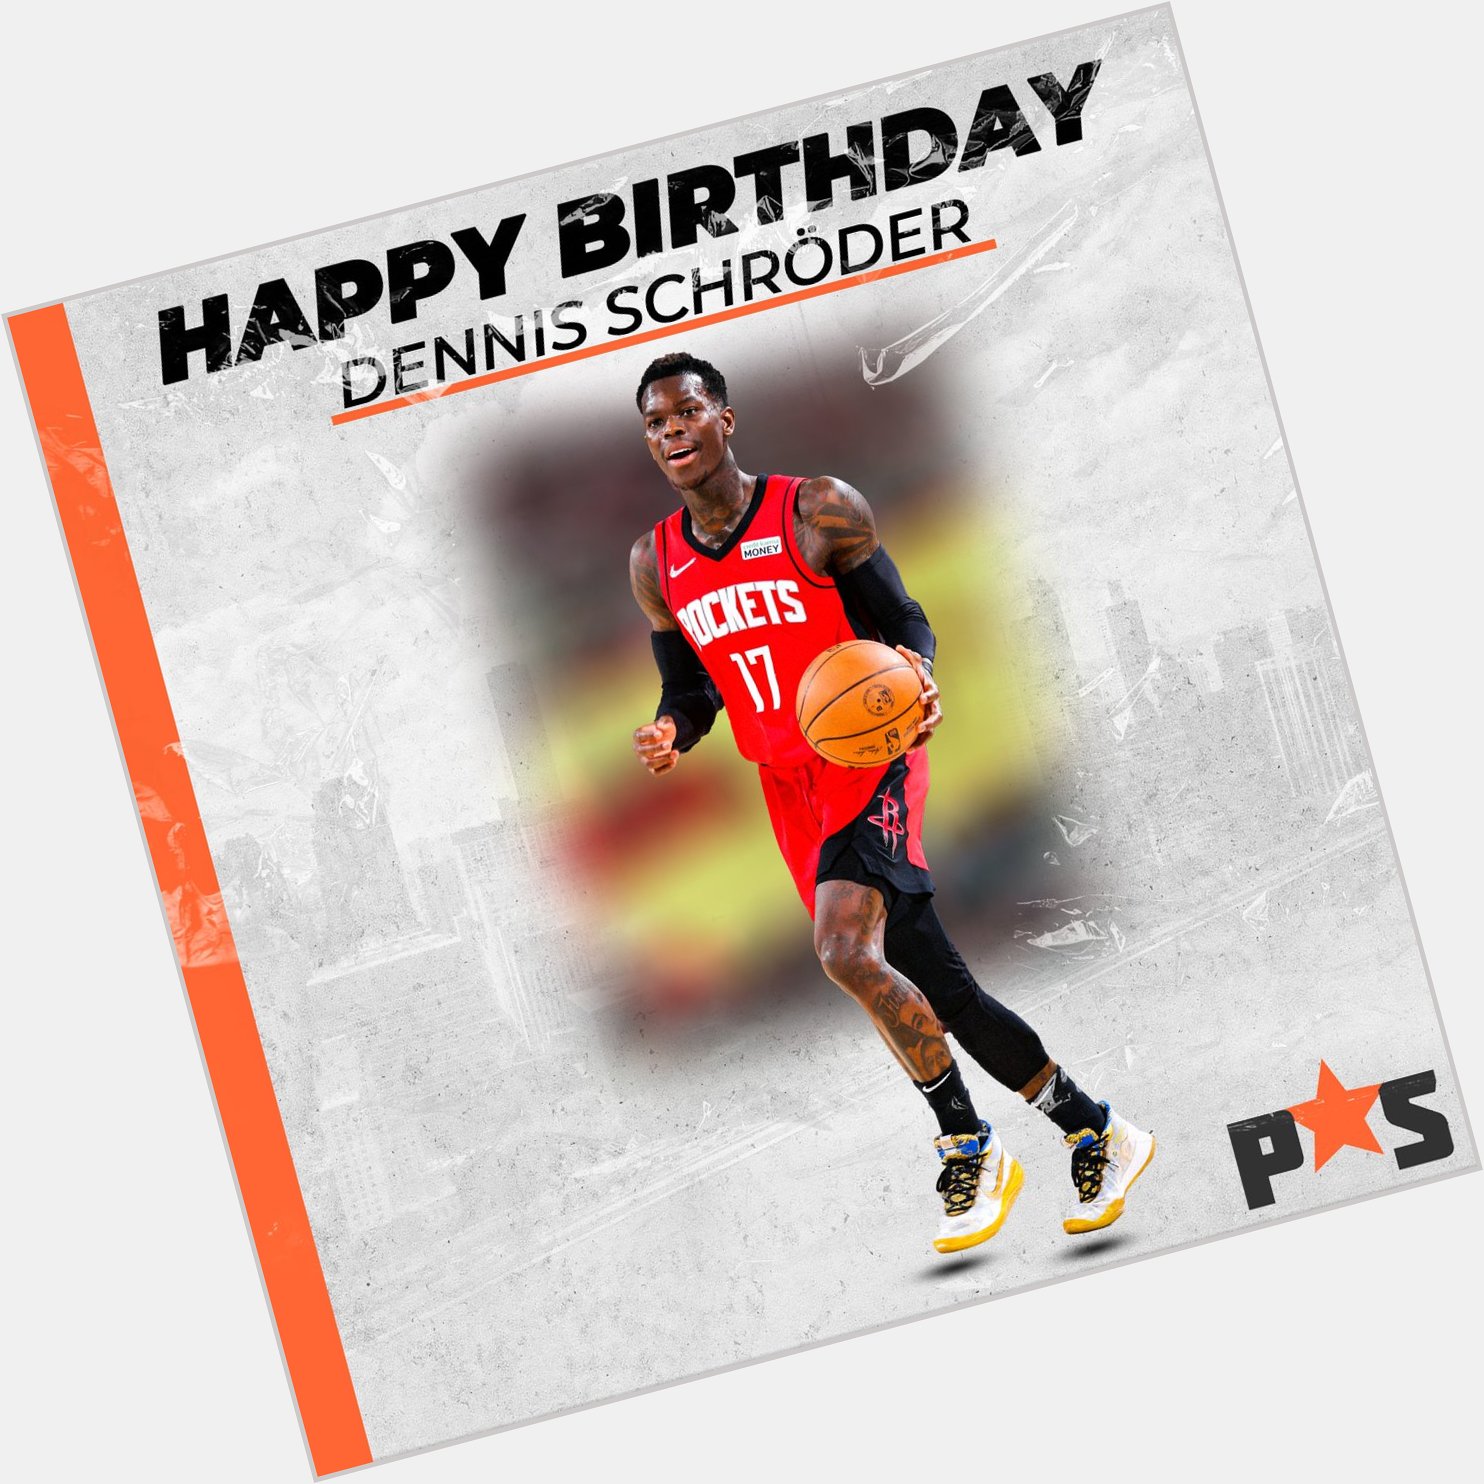 Happy birthday, Dennis Schroder!  